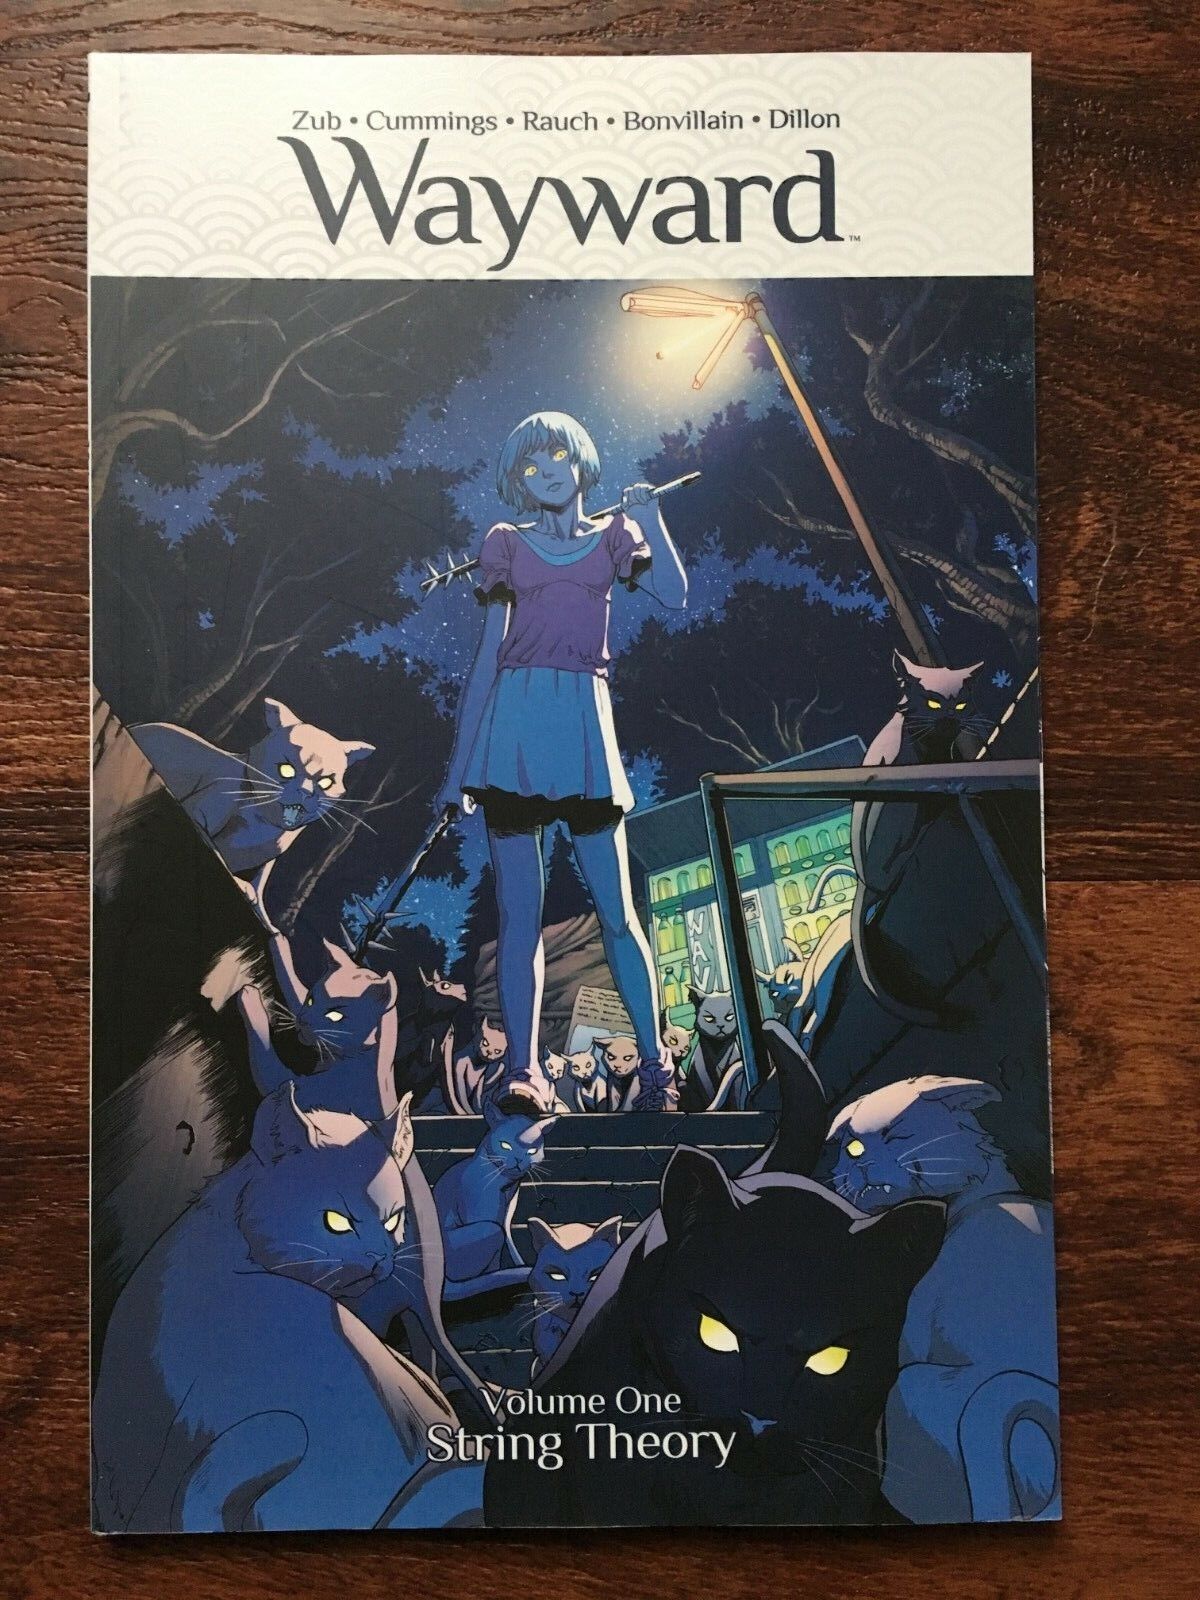 Wayward Vol 1: String Theory    Image 2015    1st Printing